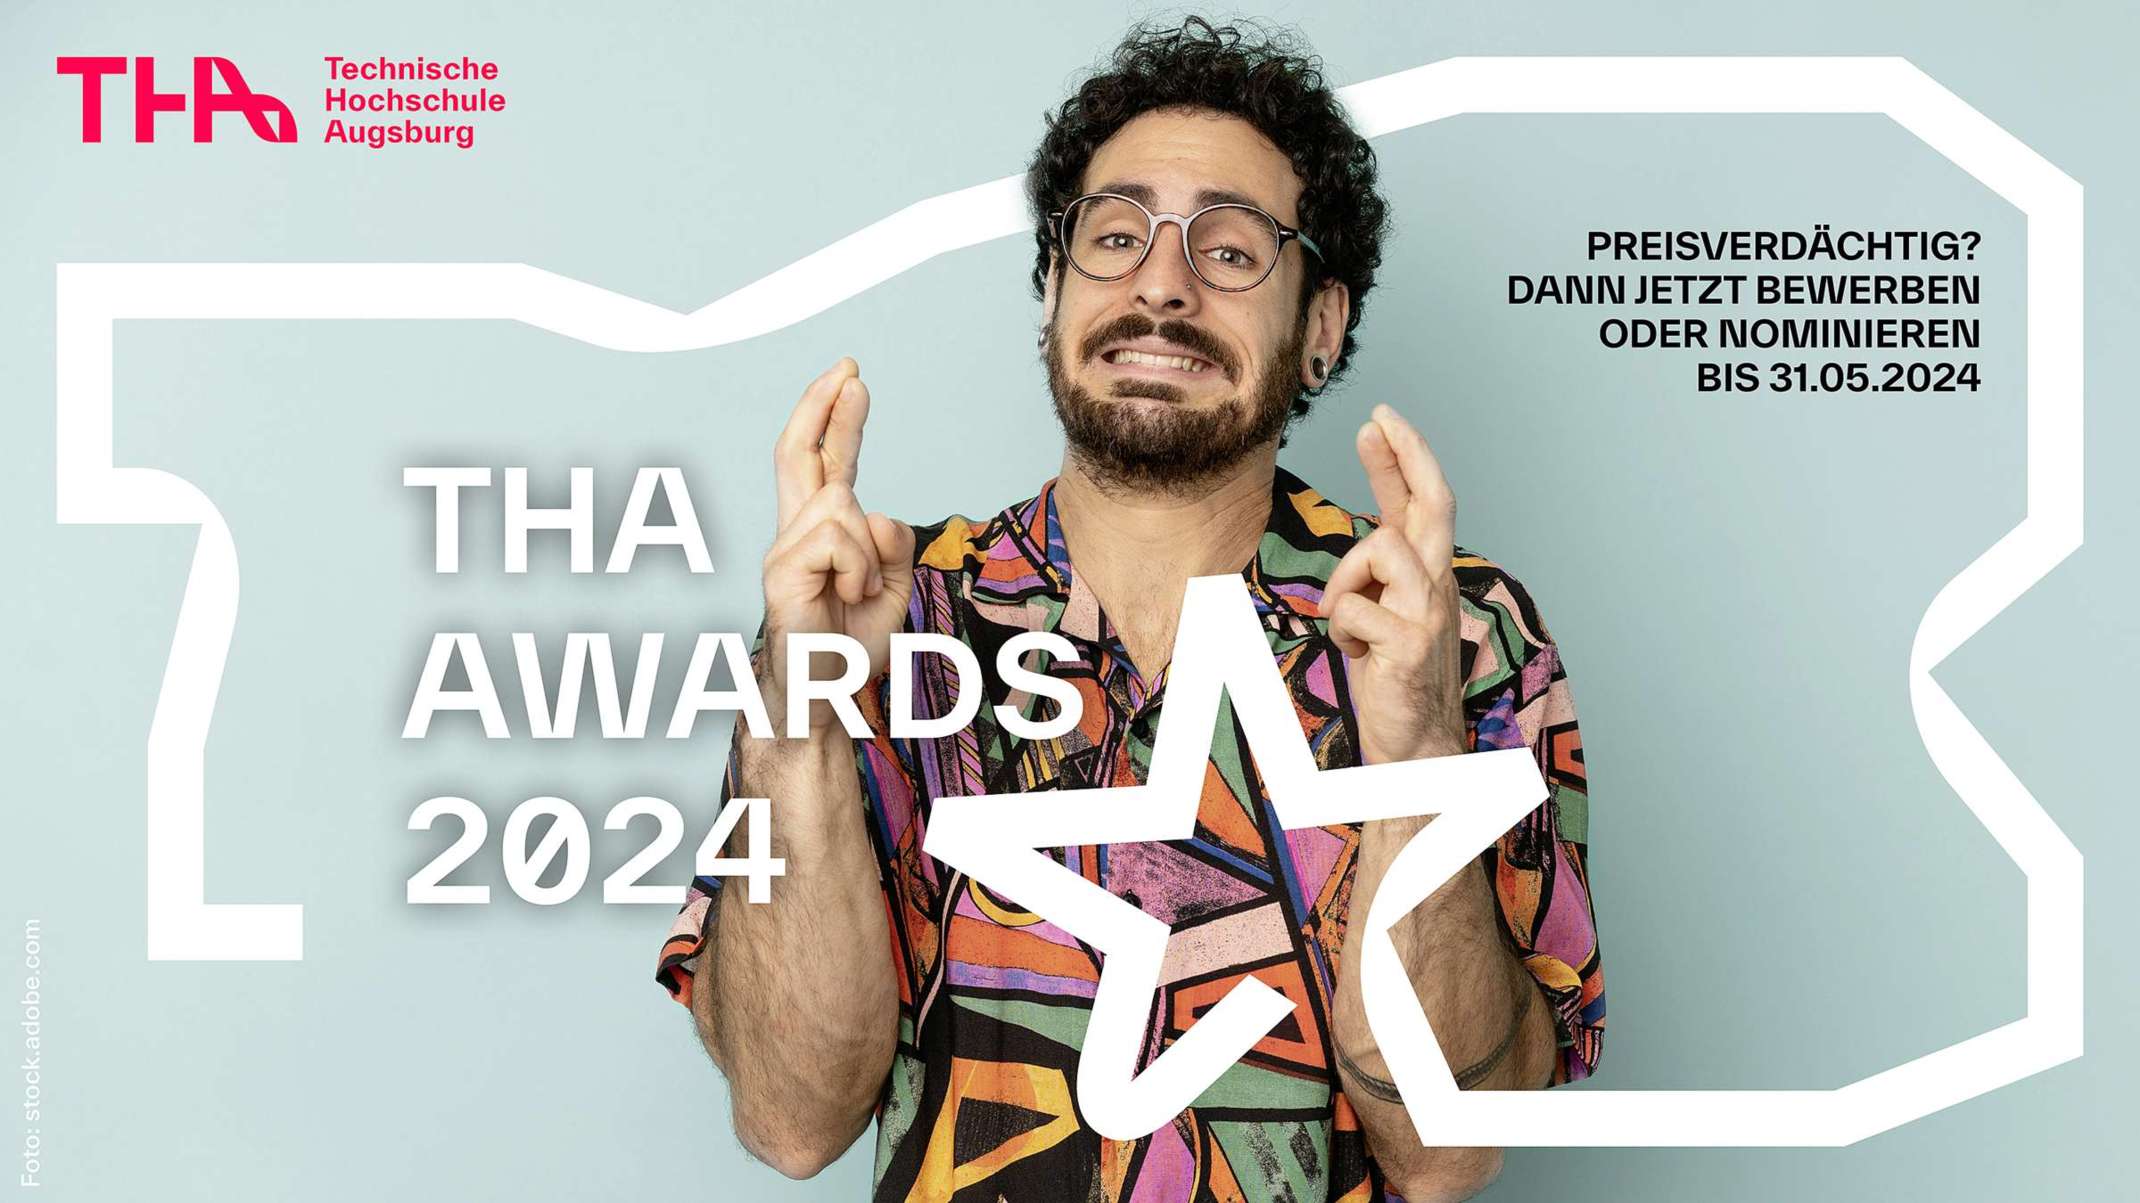 THA Awards 2024 - jetzt bewerben oder nominieren